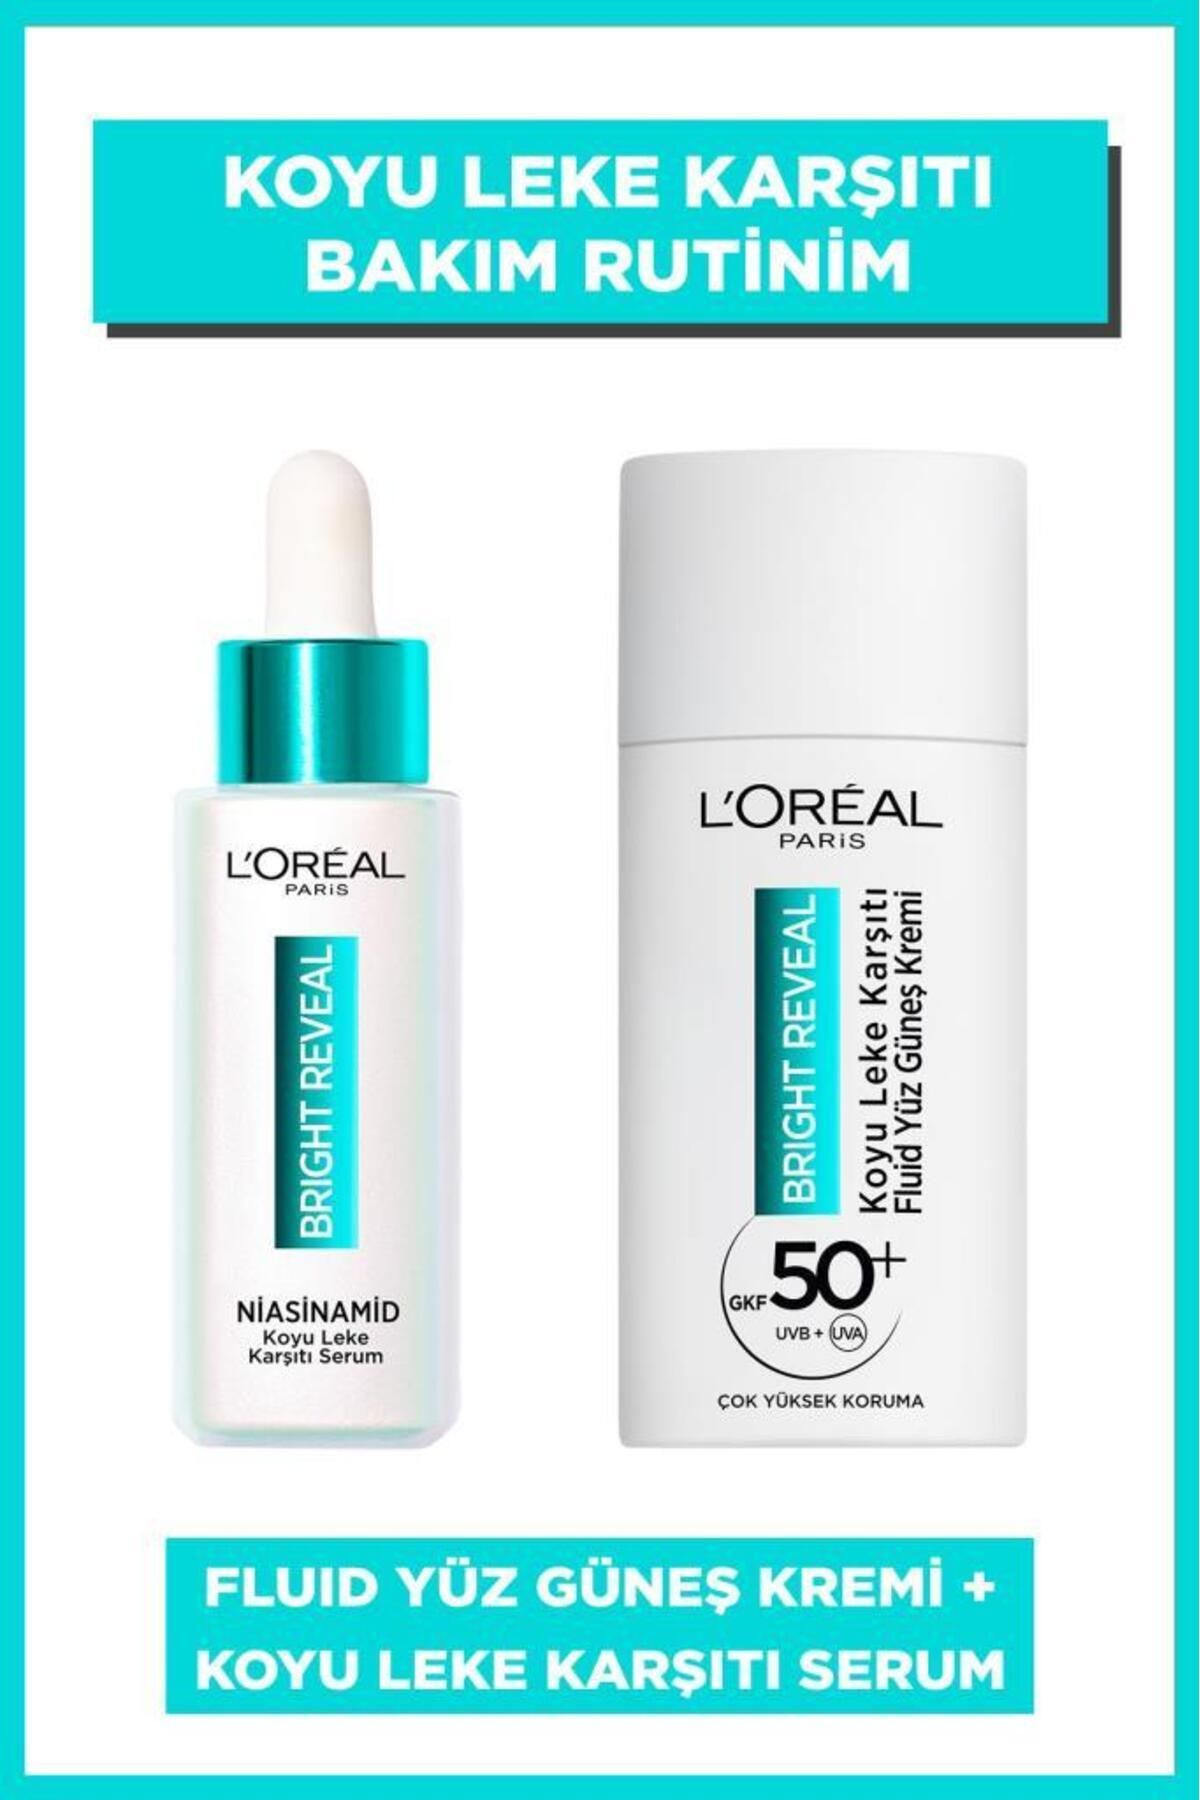 L'Oreal Paris روشن کردن روشن کردن ضد لک و کرم ضد آفتاب مجموعه محصولات مراقبت از پوست